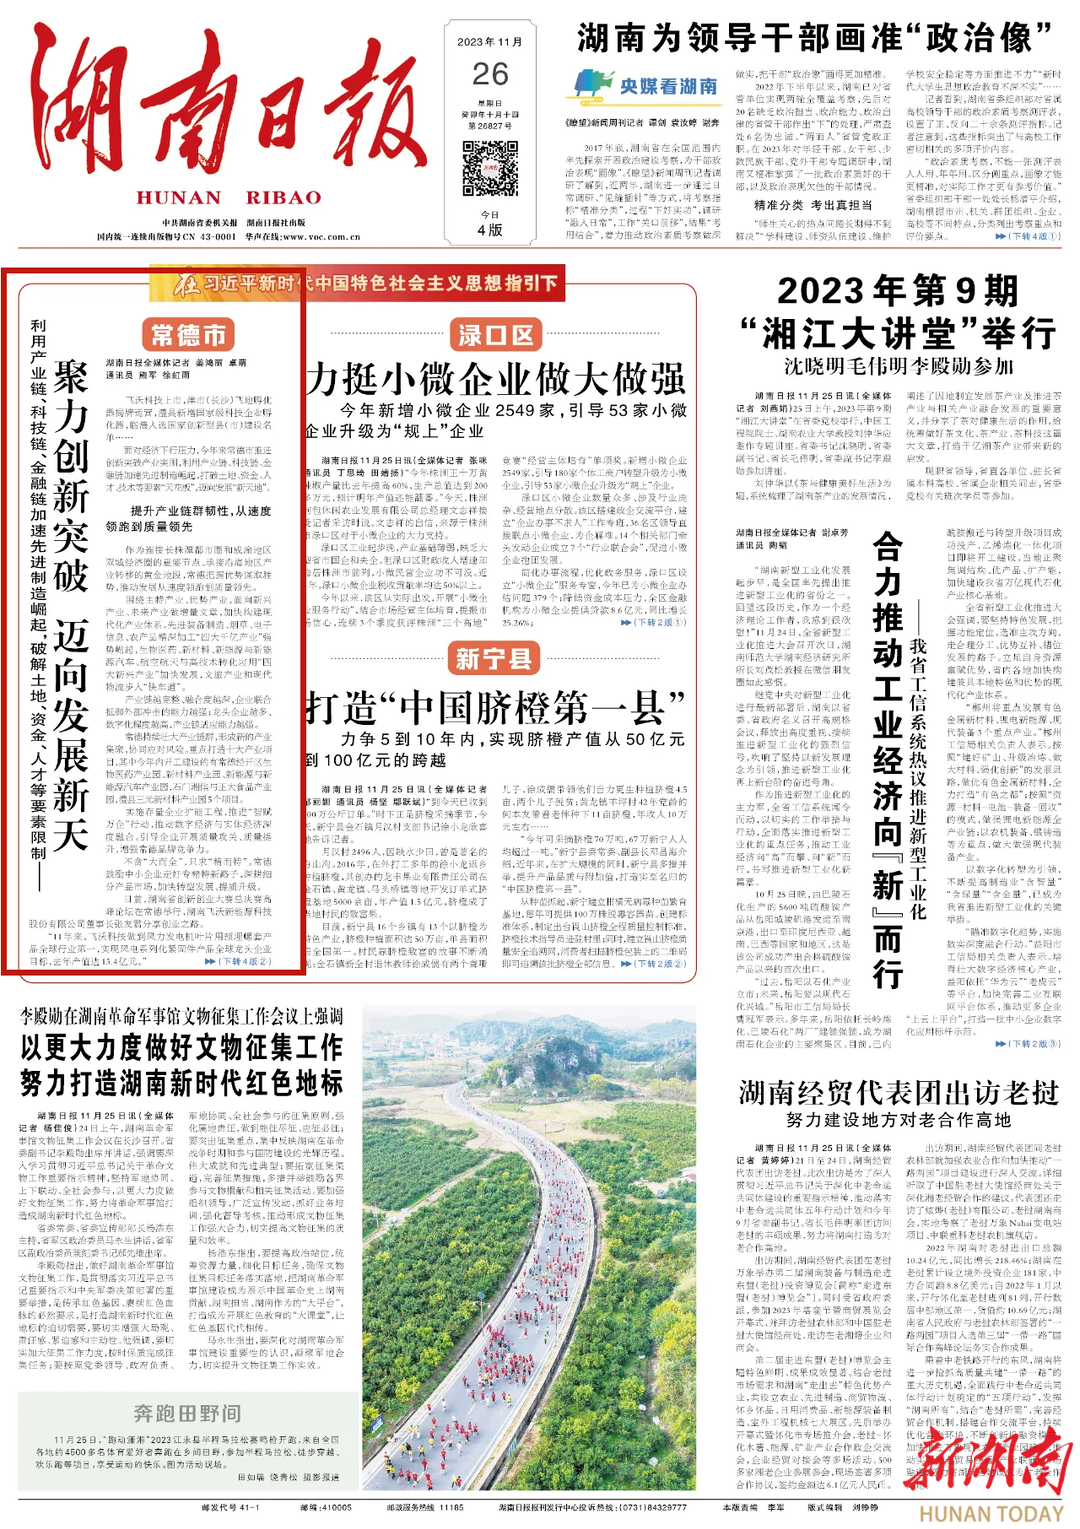 【媒体聚焦】湖南日报头版头条丨常德：聚力创新突破 迈向发展新天